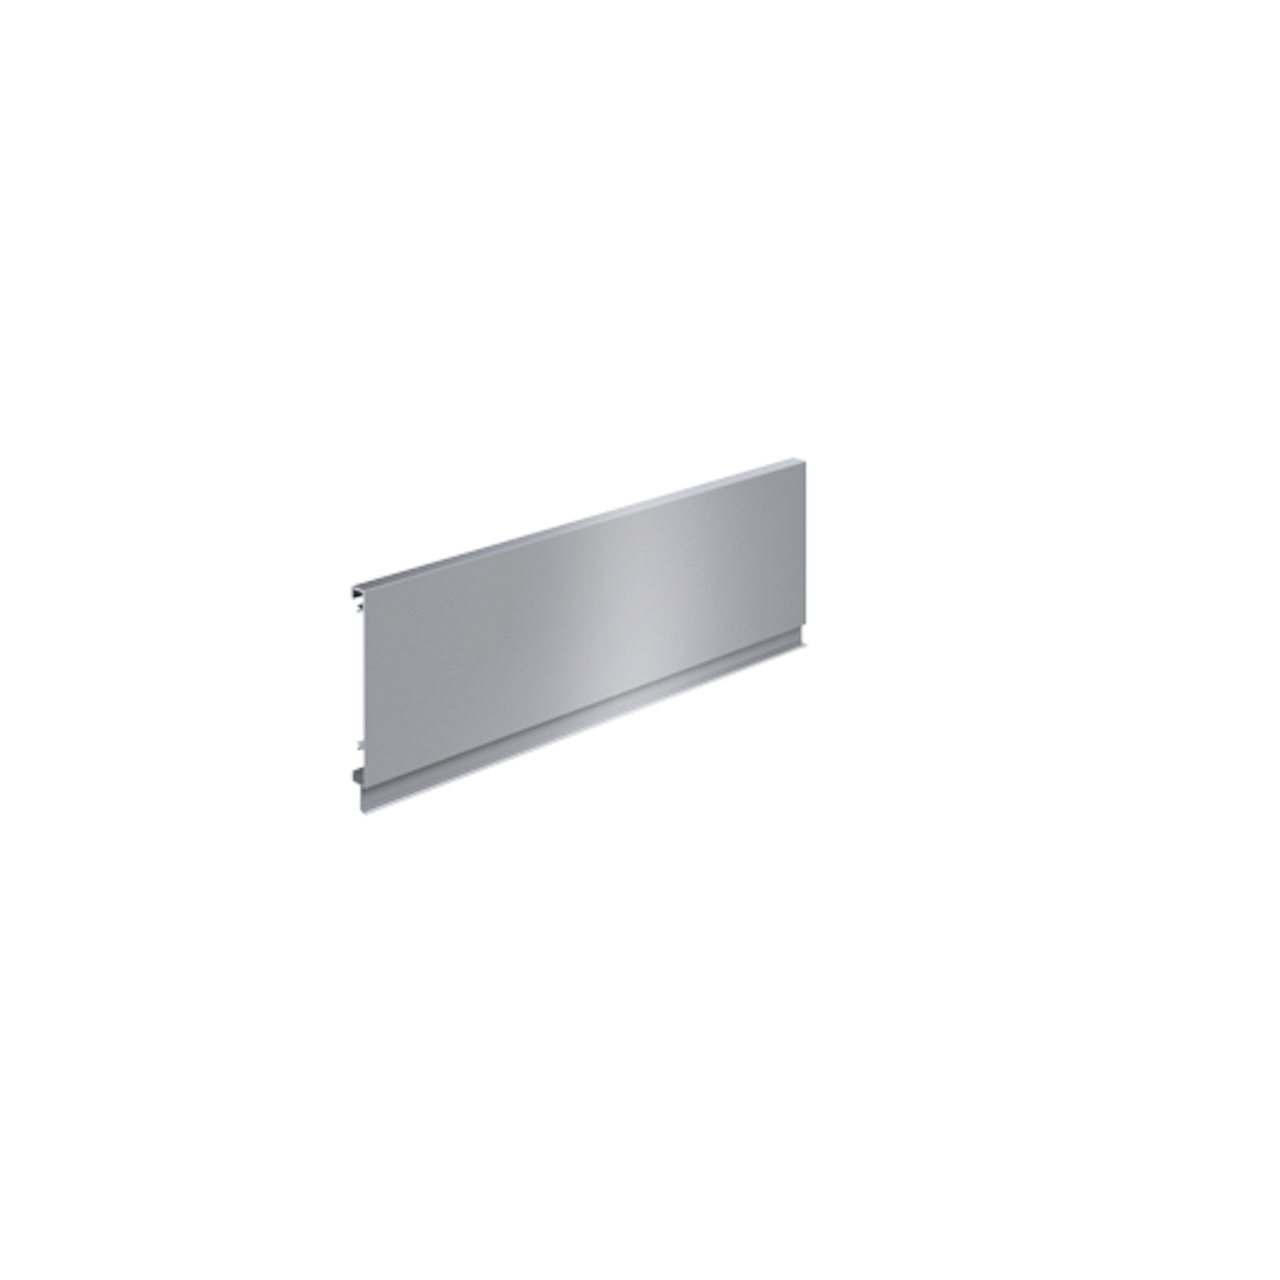 HETTICH Aluminiumrückwand InnoTech Atira / 200 / 70 mm, weiß, 9194518